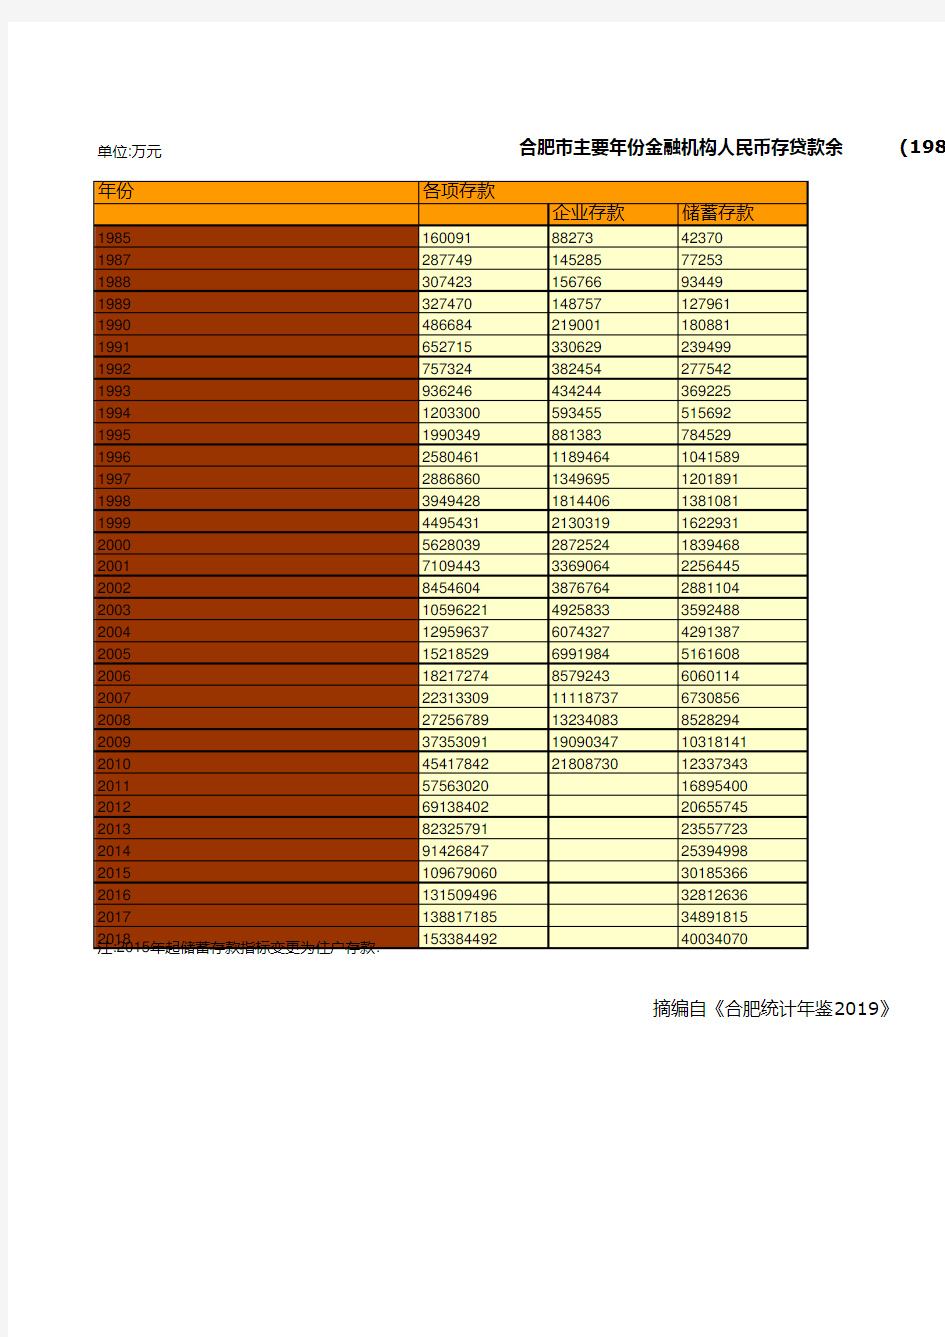 合肥市社会经济发展统计年鉴指标数据：主要年份金融机构人民币存贷款余额统计(1985-2018)